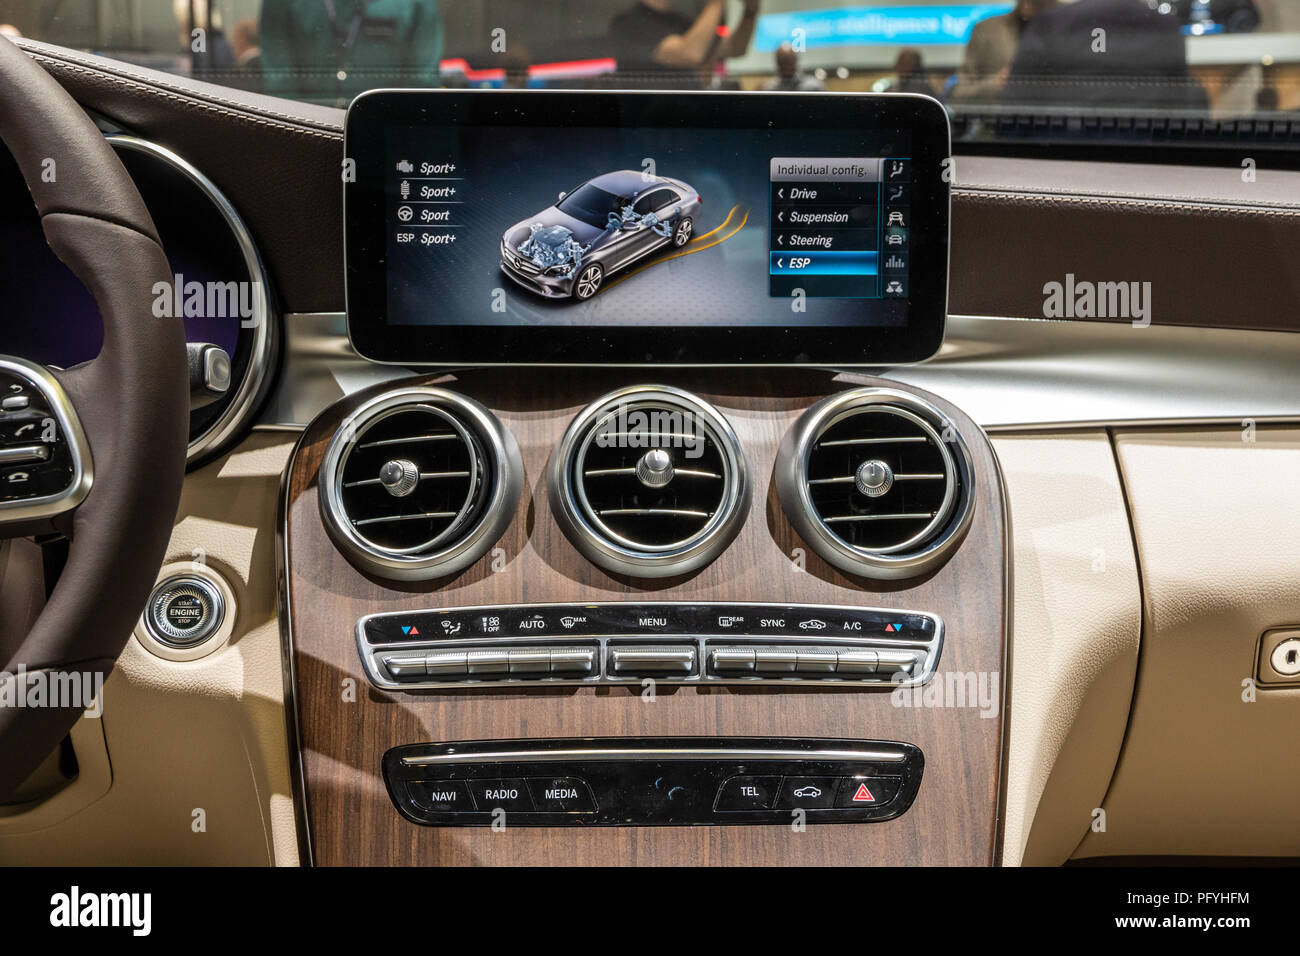 Mercedes Benz C Class Dashboard Stockfotos und -bilder Kaufen - Alamy